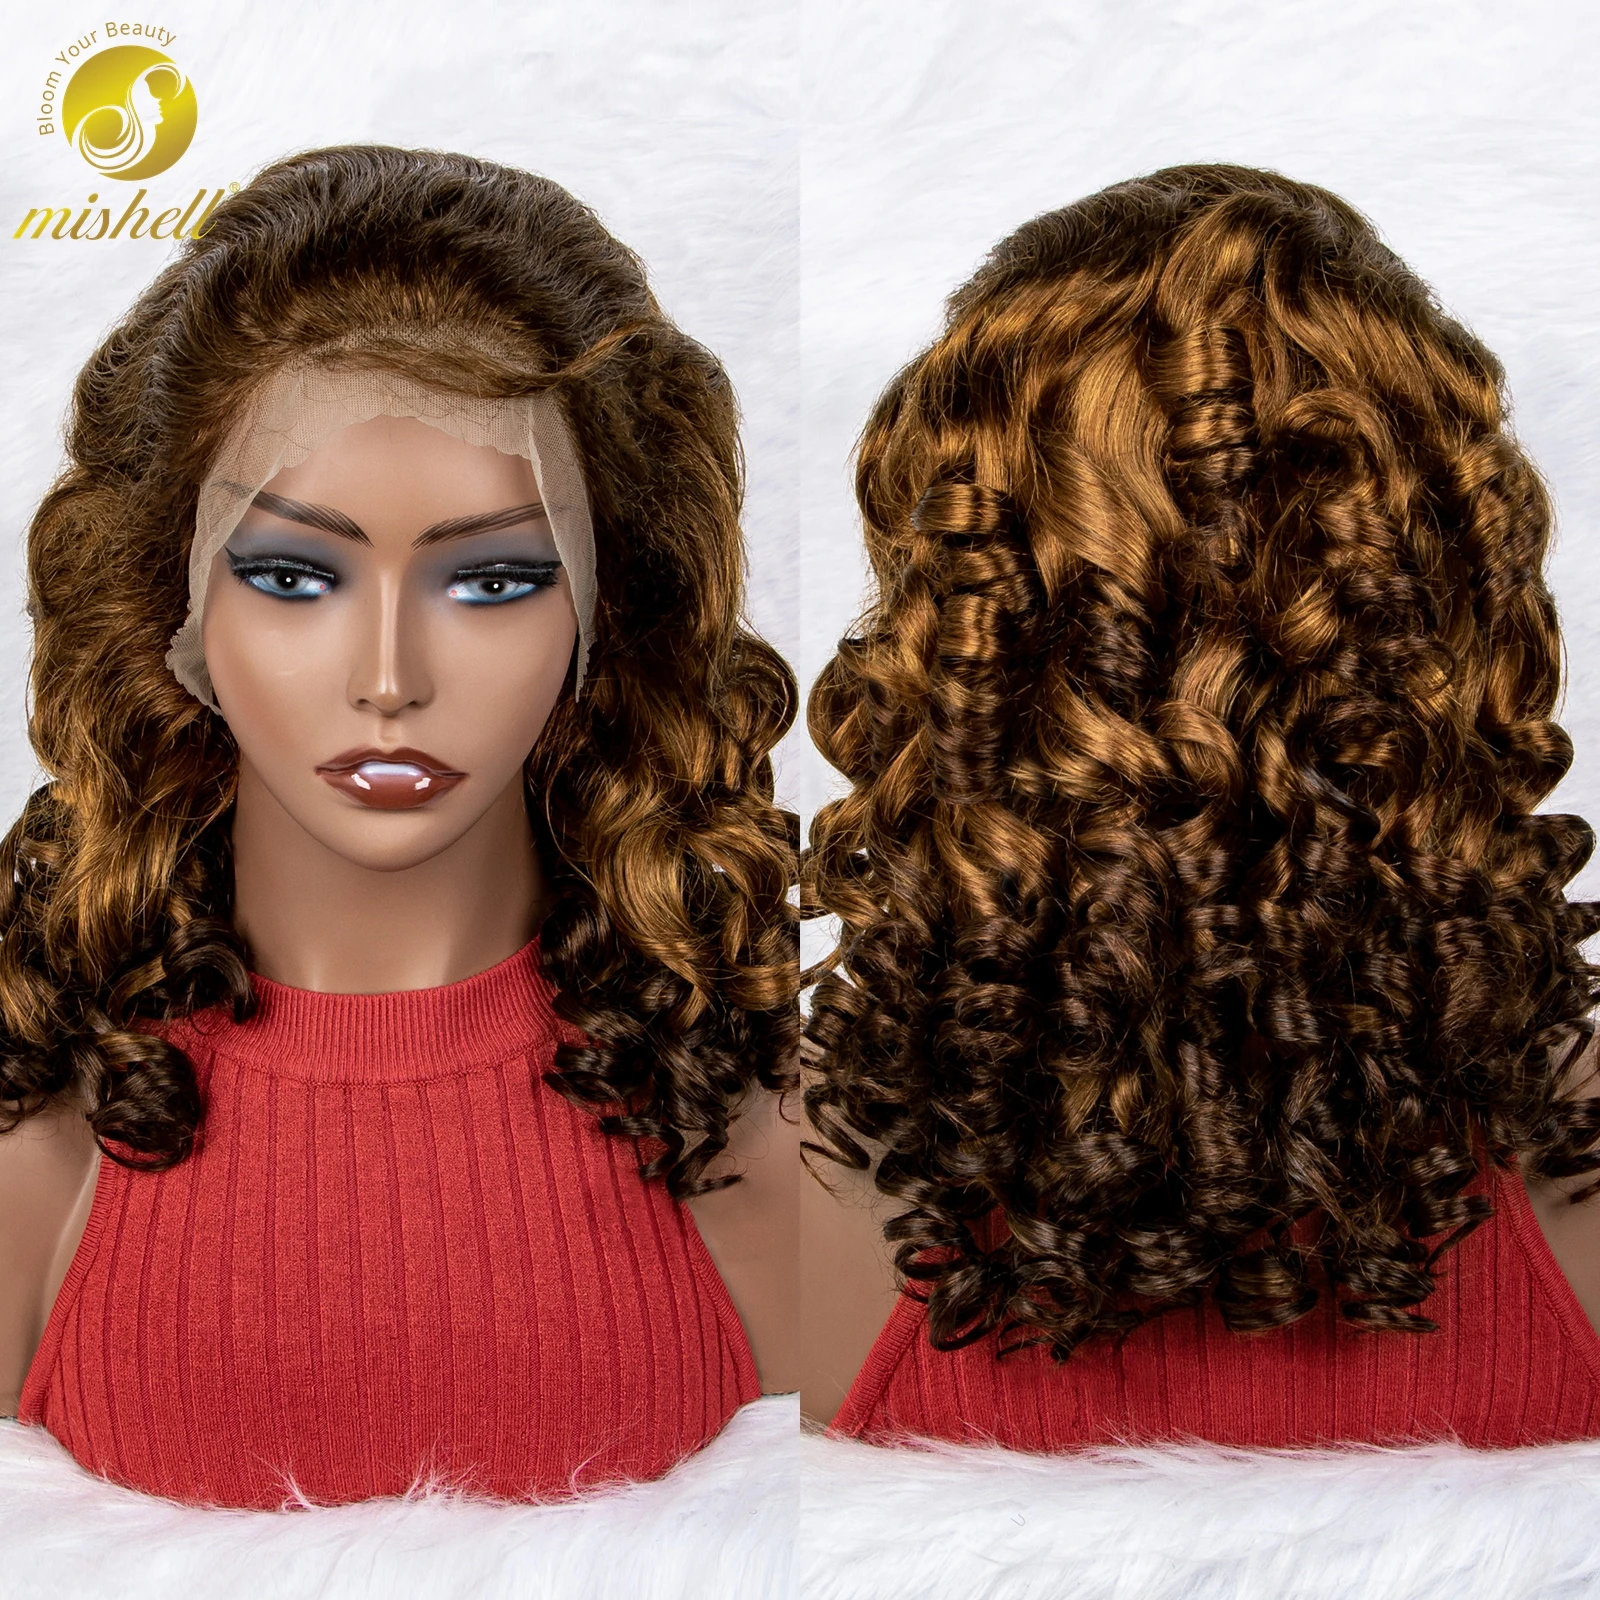 Mishell Gekleurde Losse Golvende Lace Pruik 13X4 Lace Front Human Hair Pruik Pre Geplukt Met Baby Hair Brazilian Remy Hair Voor Vrouwen